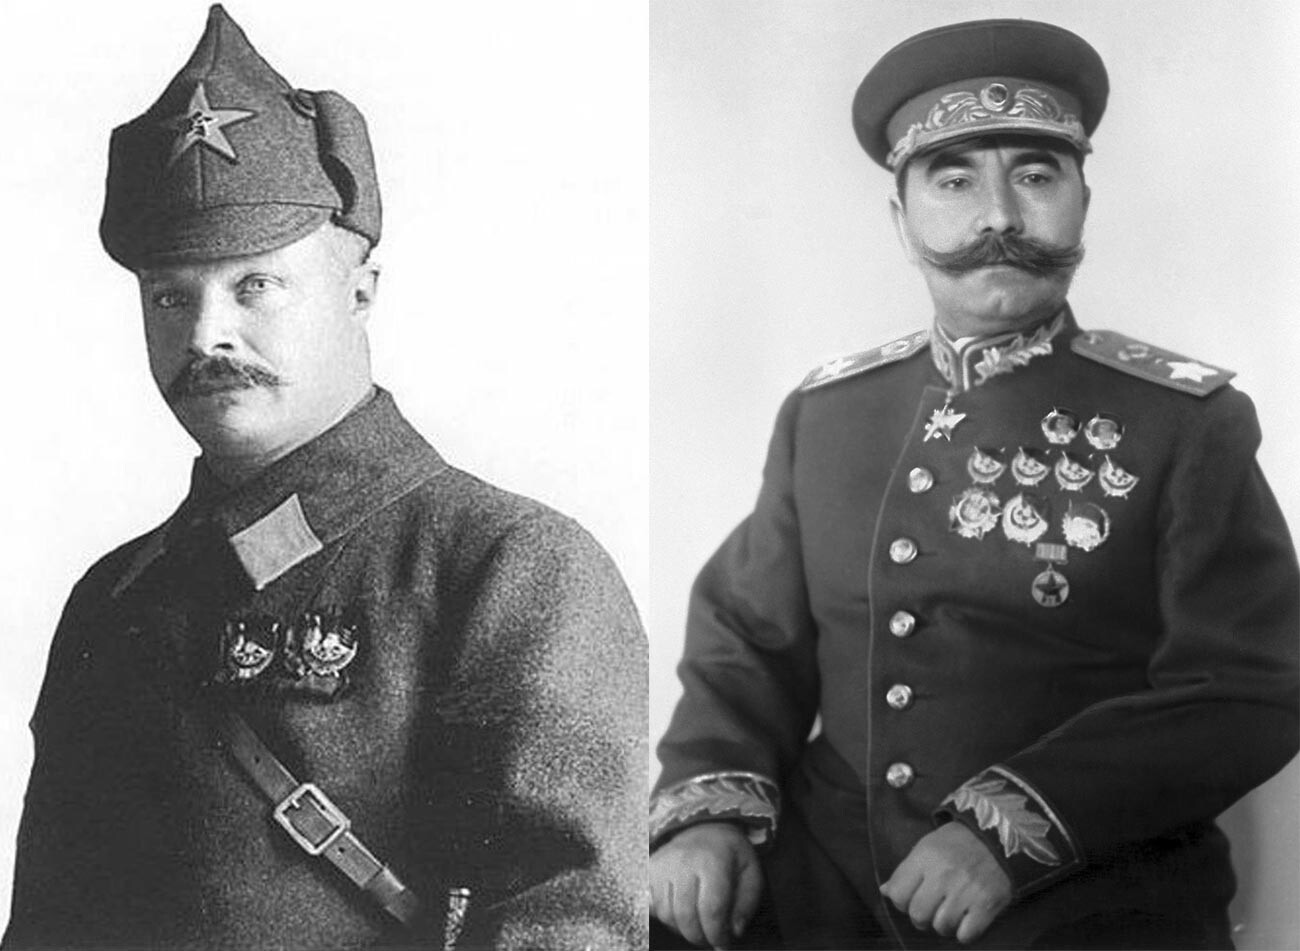 Слева: М. В. Фрунзе в «буденовке». Справа: С.М. Буденный в парадной форме образца 1943 года